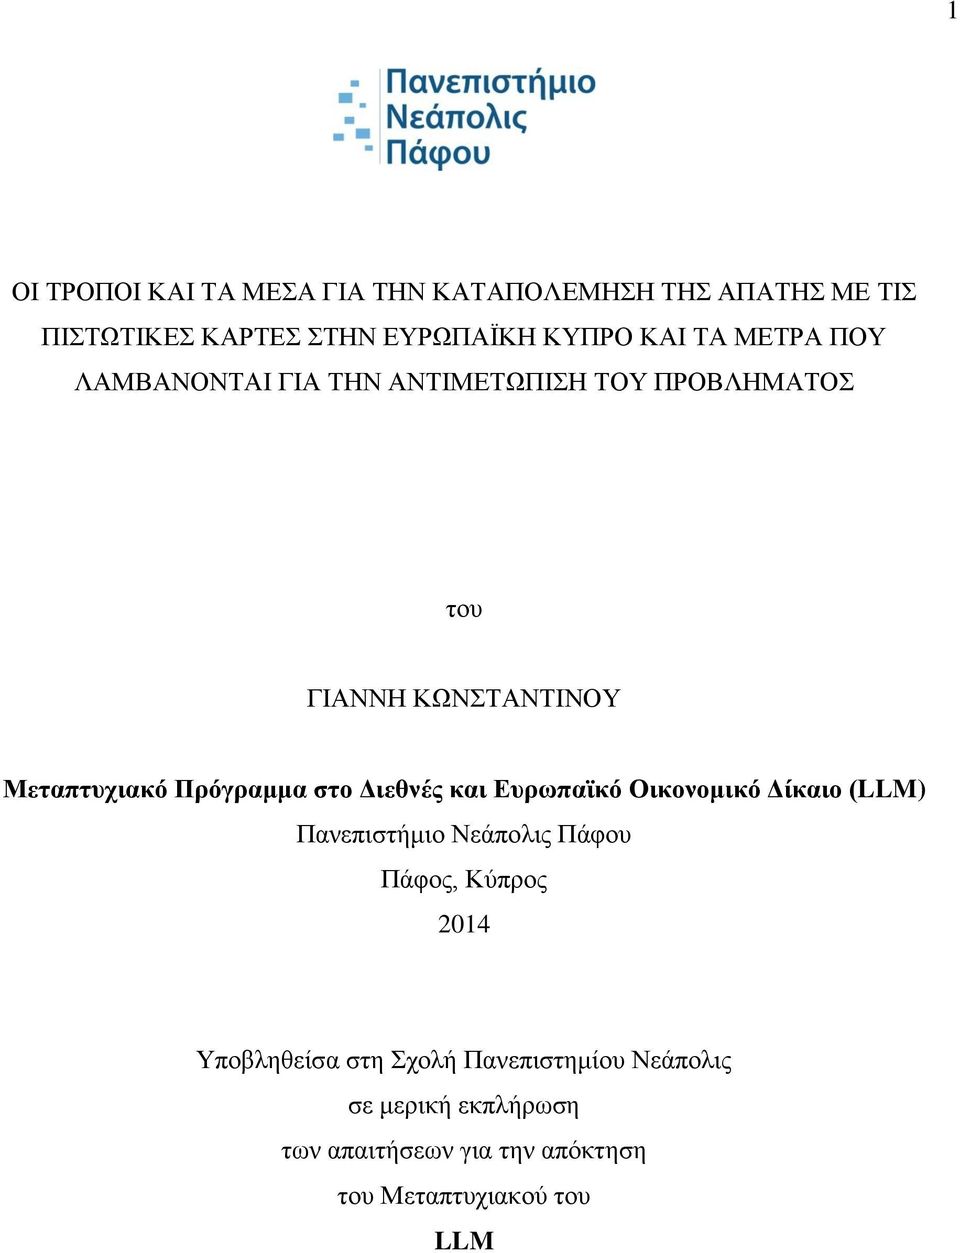 στο Διεθνές και Ευρωπαϊκό Οικονομικό Δίκαιο (LLM) Πανεπιστήμιο Νεάπολις Πάφου Πάφος, Κύπρος 2014 Υποβληθείσα